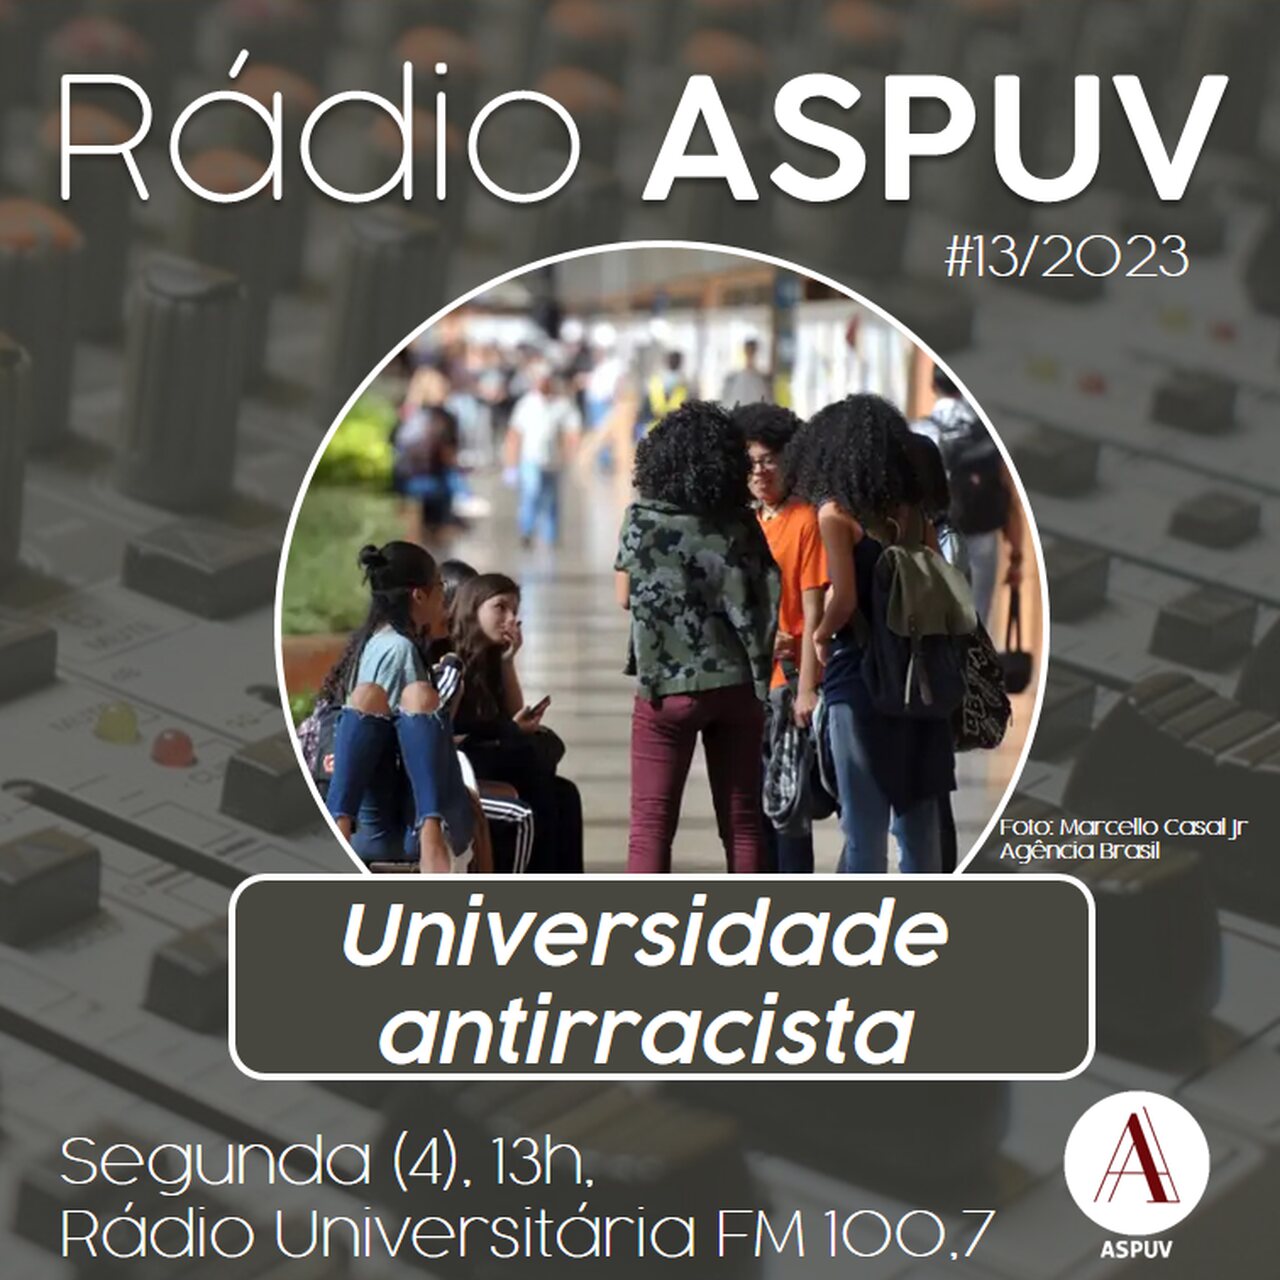 Rádio ASPUV #13/23 | Universidade antirracista